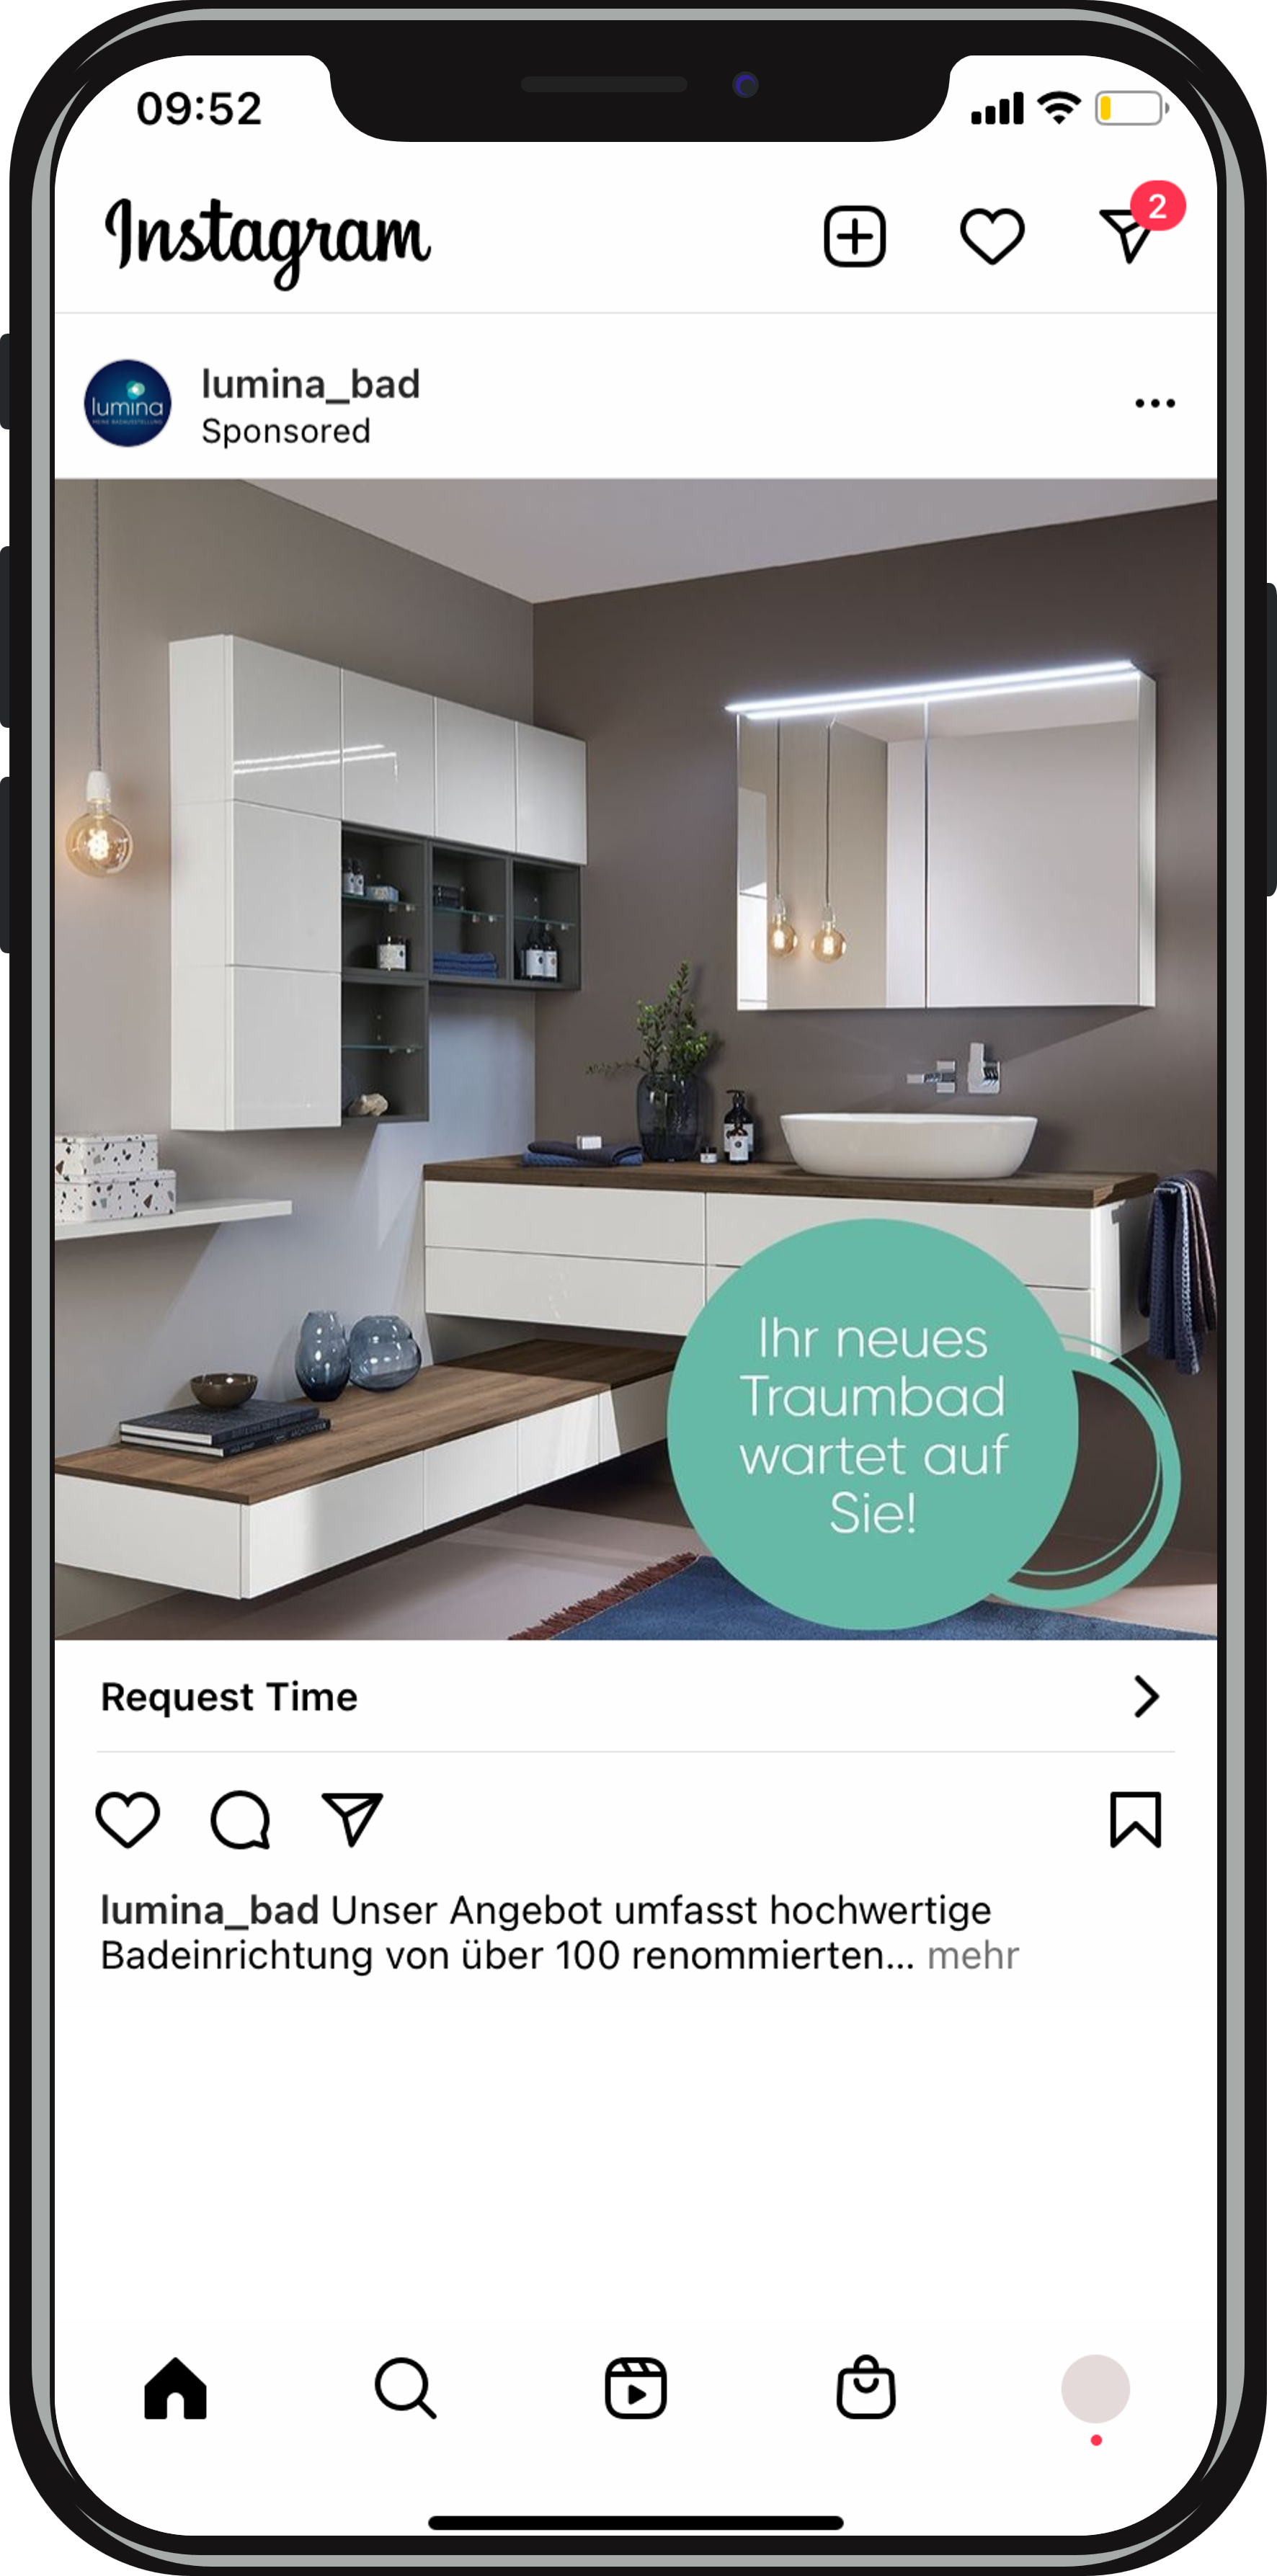 Captura de pantalla que muestra los anuncios de las redes sociales en Instagram